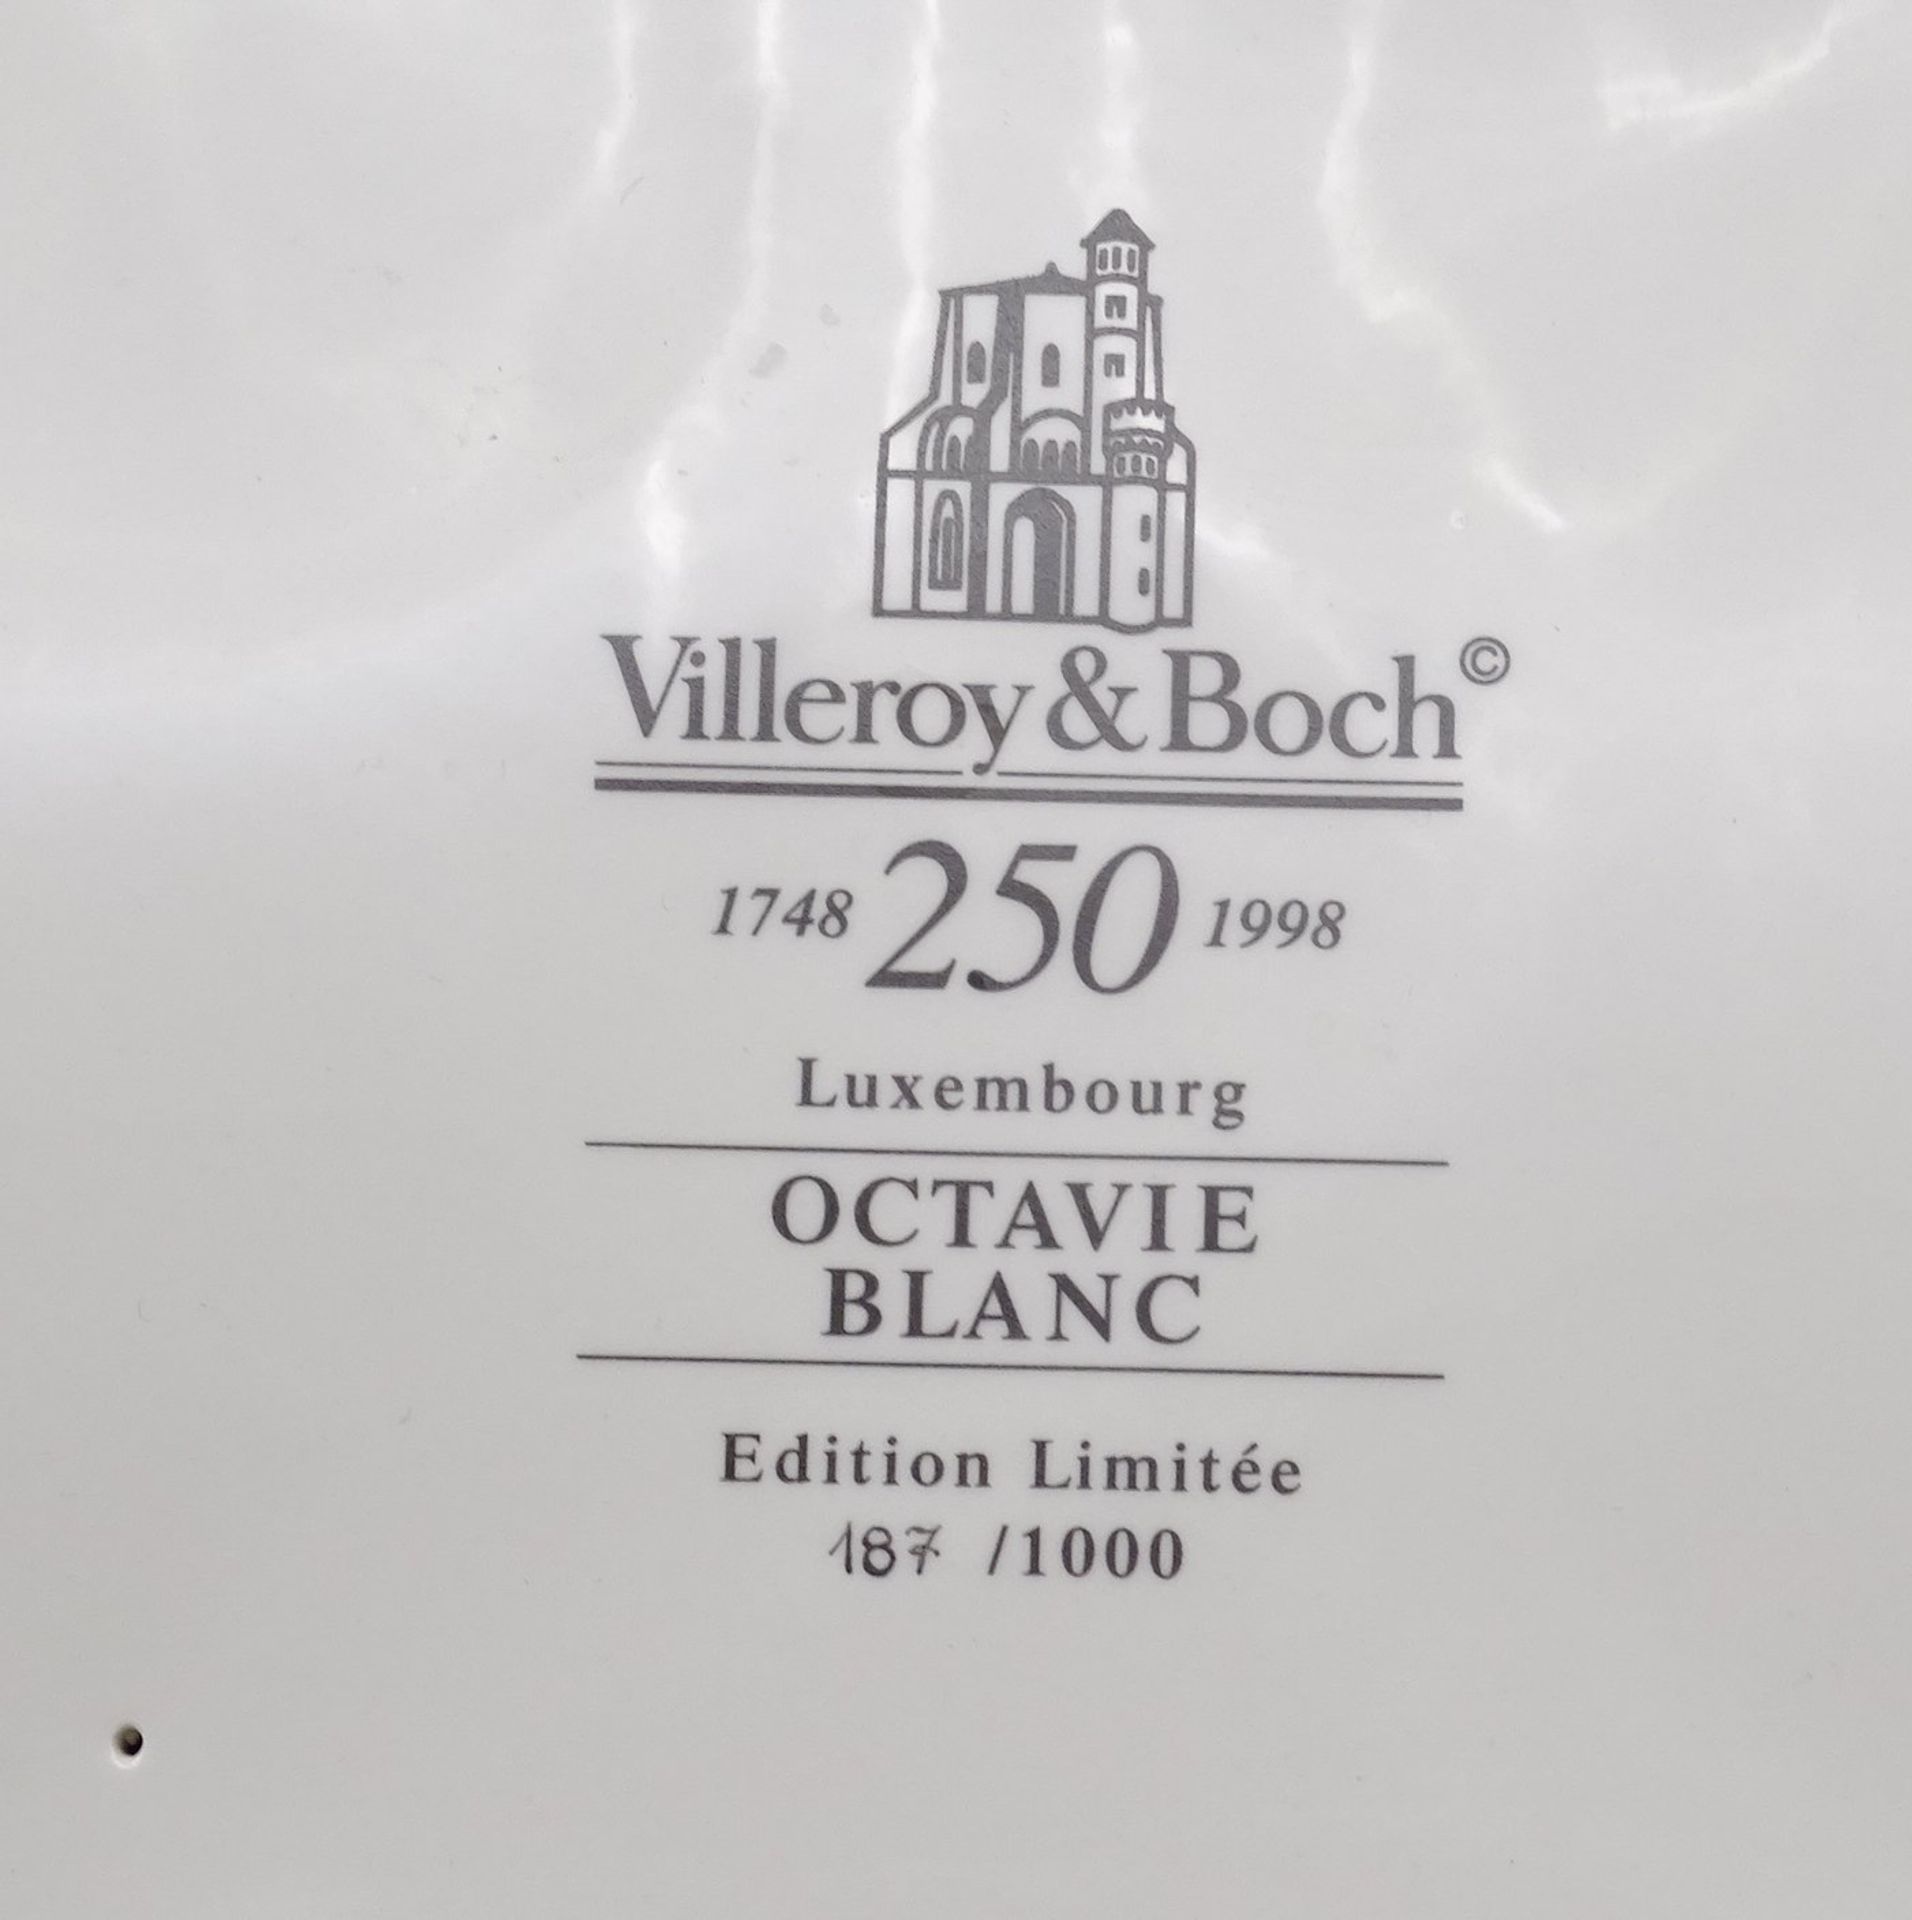 Große Prunk Terrine, Villeroy & Boch, im Empire Stil, 250 Jahre, Octavie Blanc, Limitiert 187 / 10 - Image 5 of 6